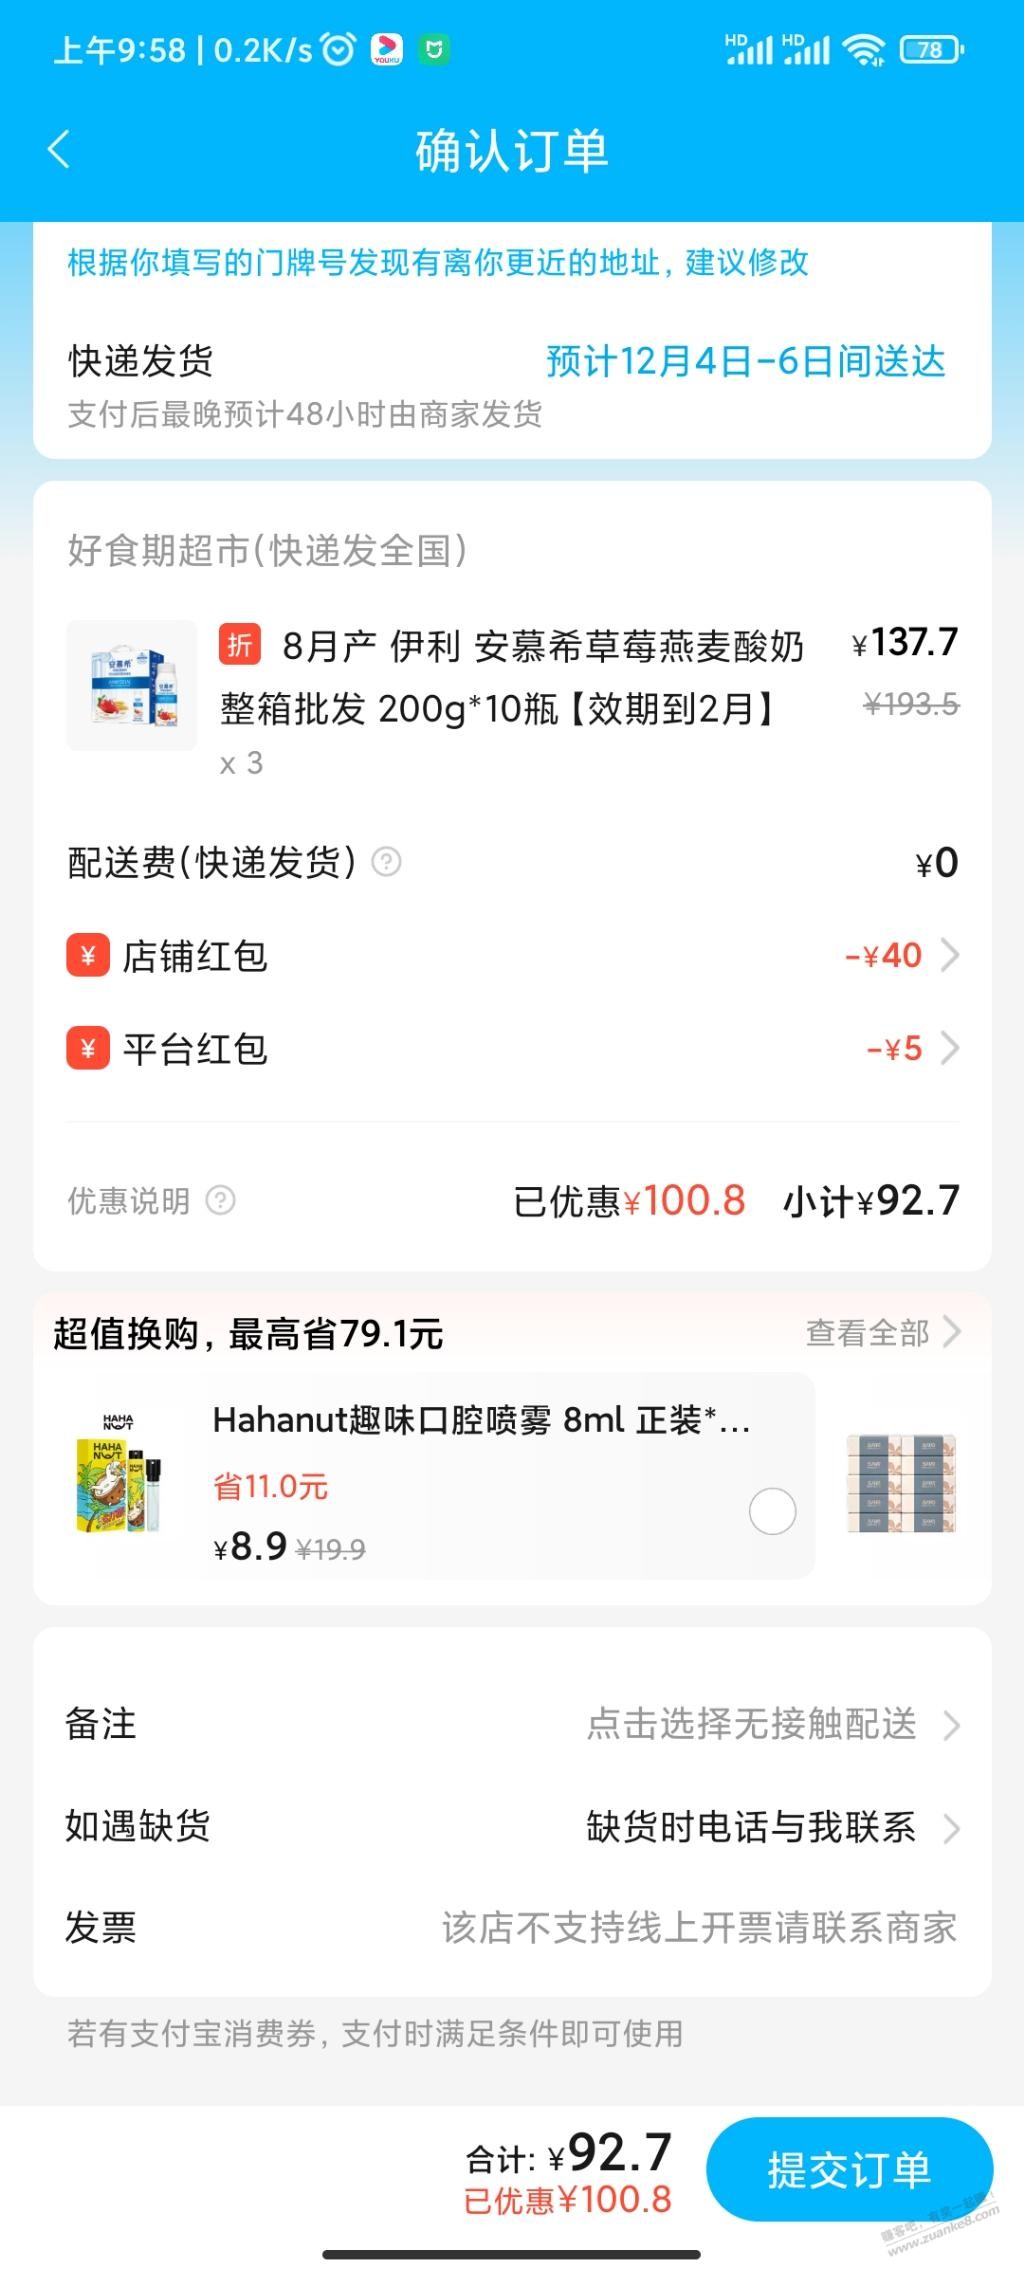 3箱伊利燕麦草莓酸奶80块钱好价-惠小助(52huixz.com)